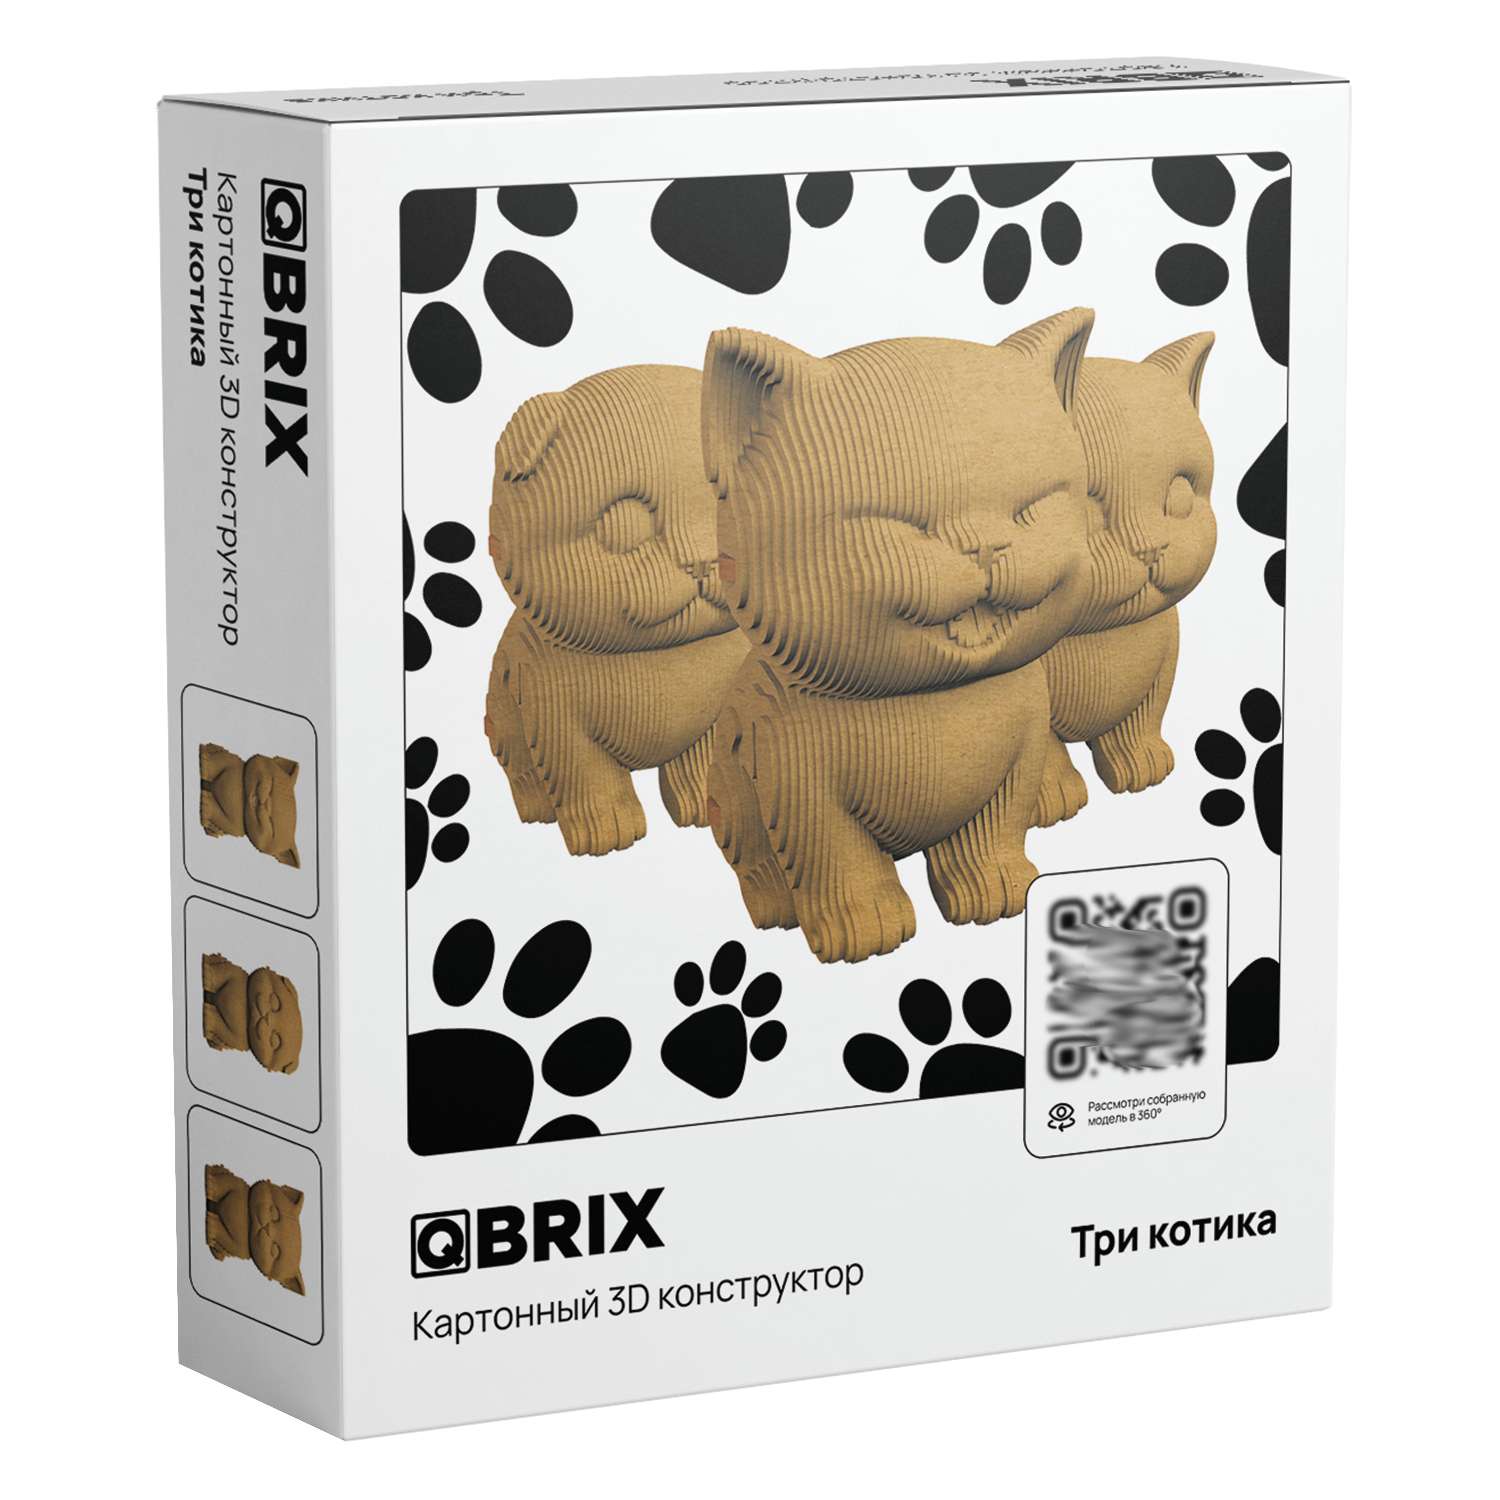 Конструктор QBRIX 3D картонный Три котика 20021 20021 - фото 1